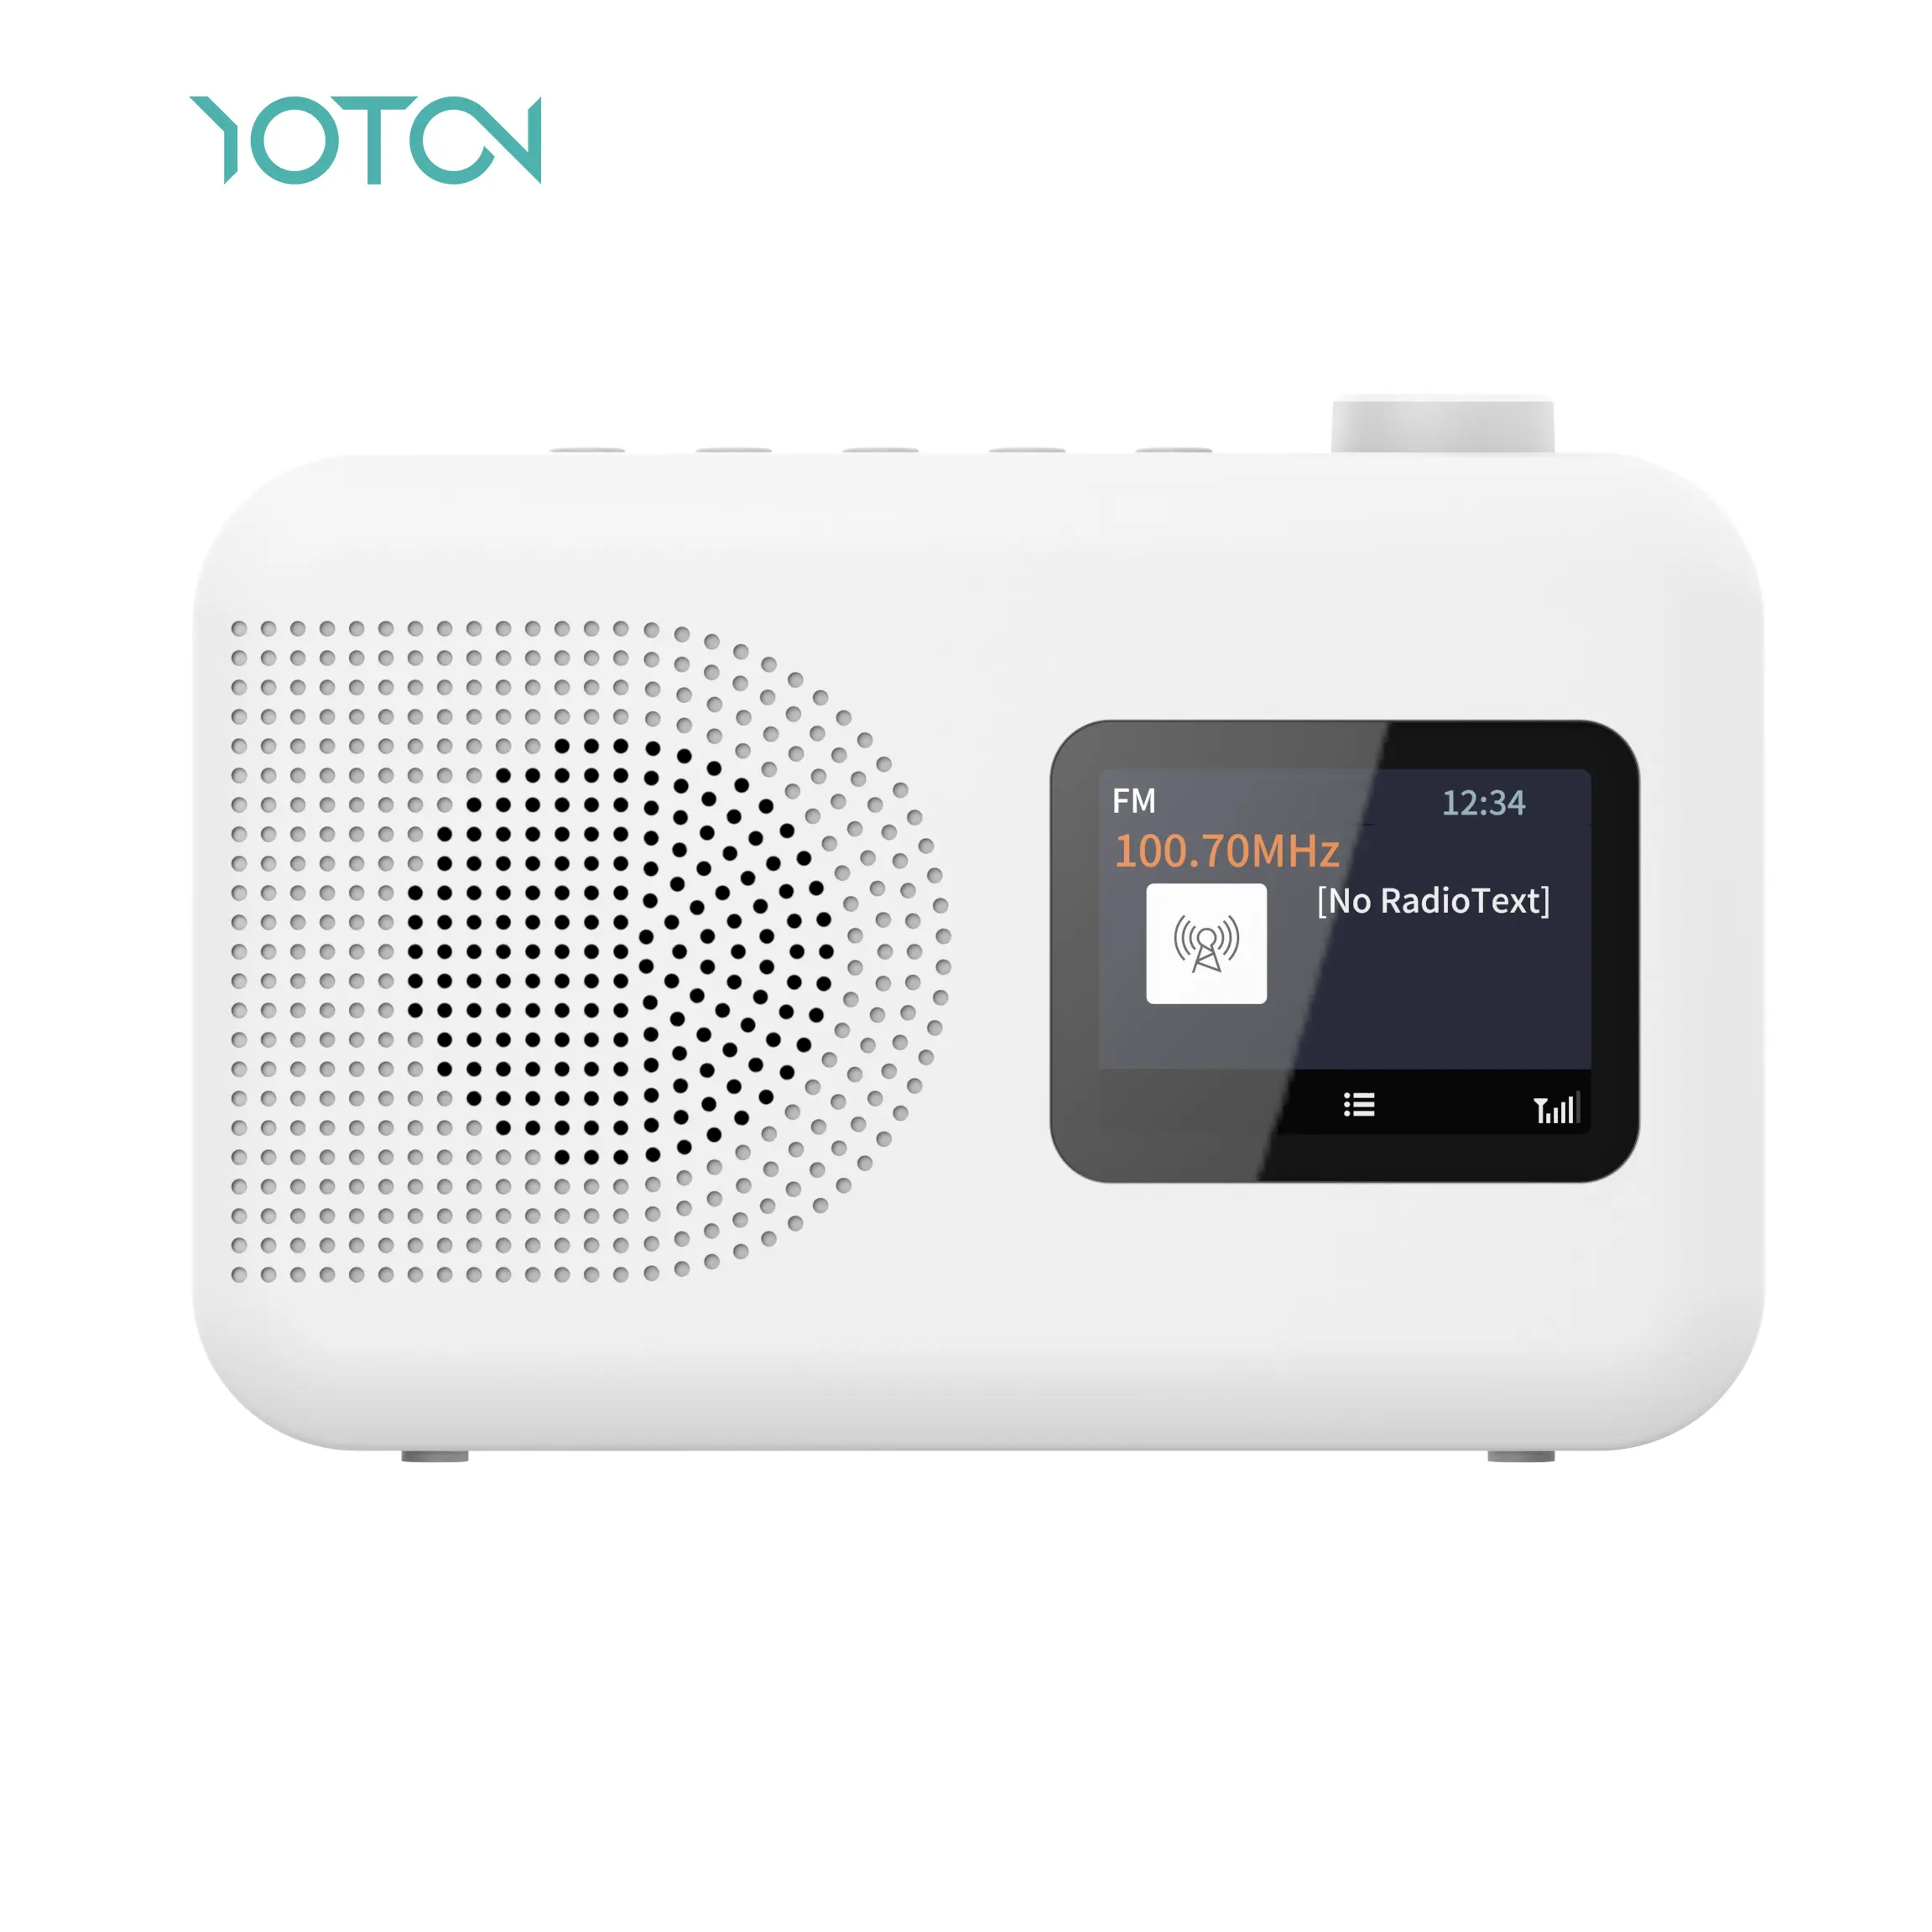 YoTon Новое поступление DAB + FM радио 2,4 дюймов цветной TFT дисплей Fm портативное радио для дома